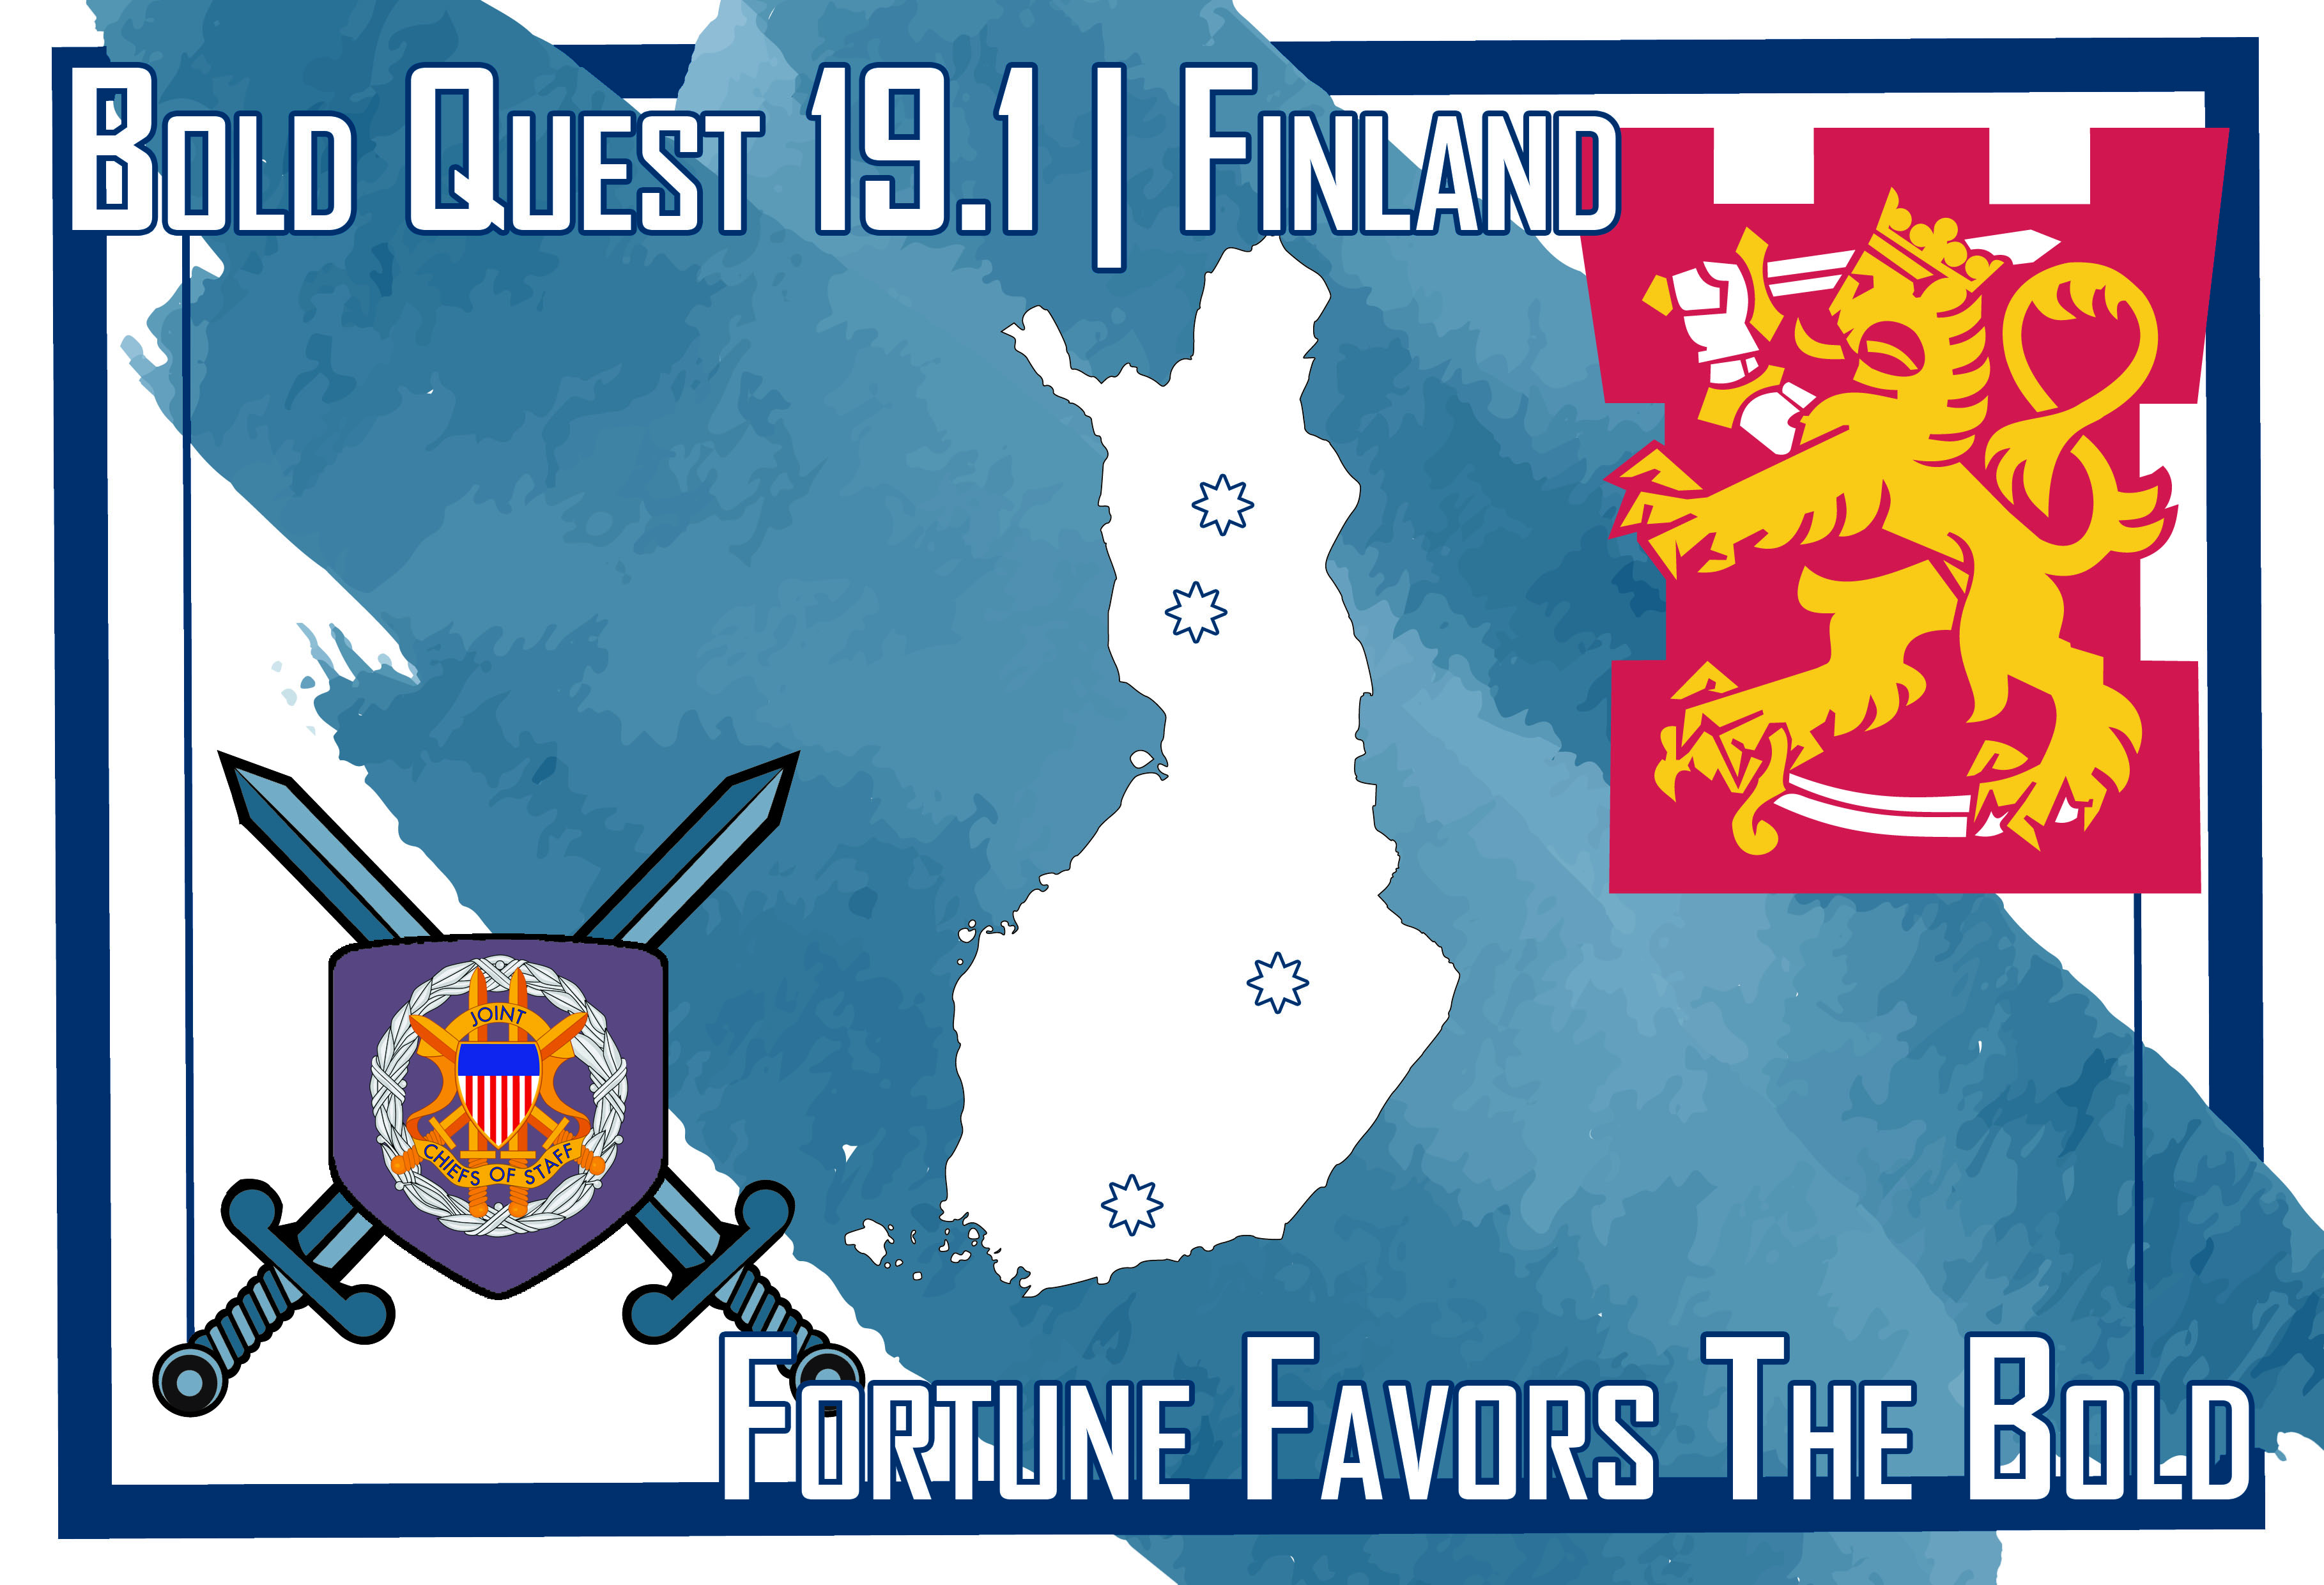 Bold Quest -tapahtuman logossa on keskellä Suomen karttakuva, oikeassa yläreunassa Puolustusvoimien tornileijonatunnus ja vasemmassa alareunassa Yhdysvaltojen yleisesikunnan tunnus.